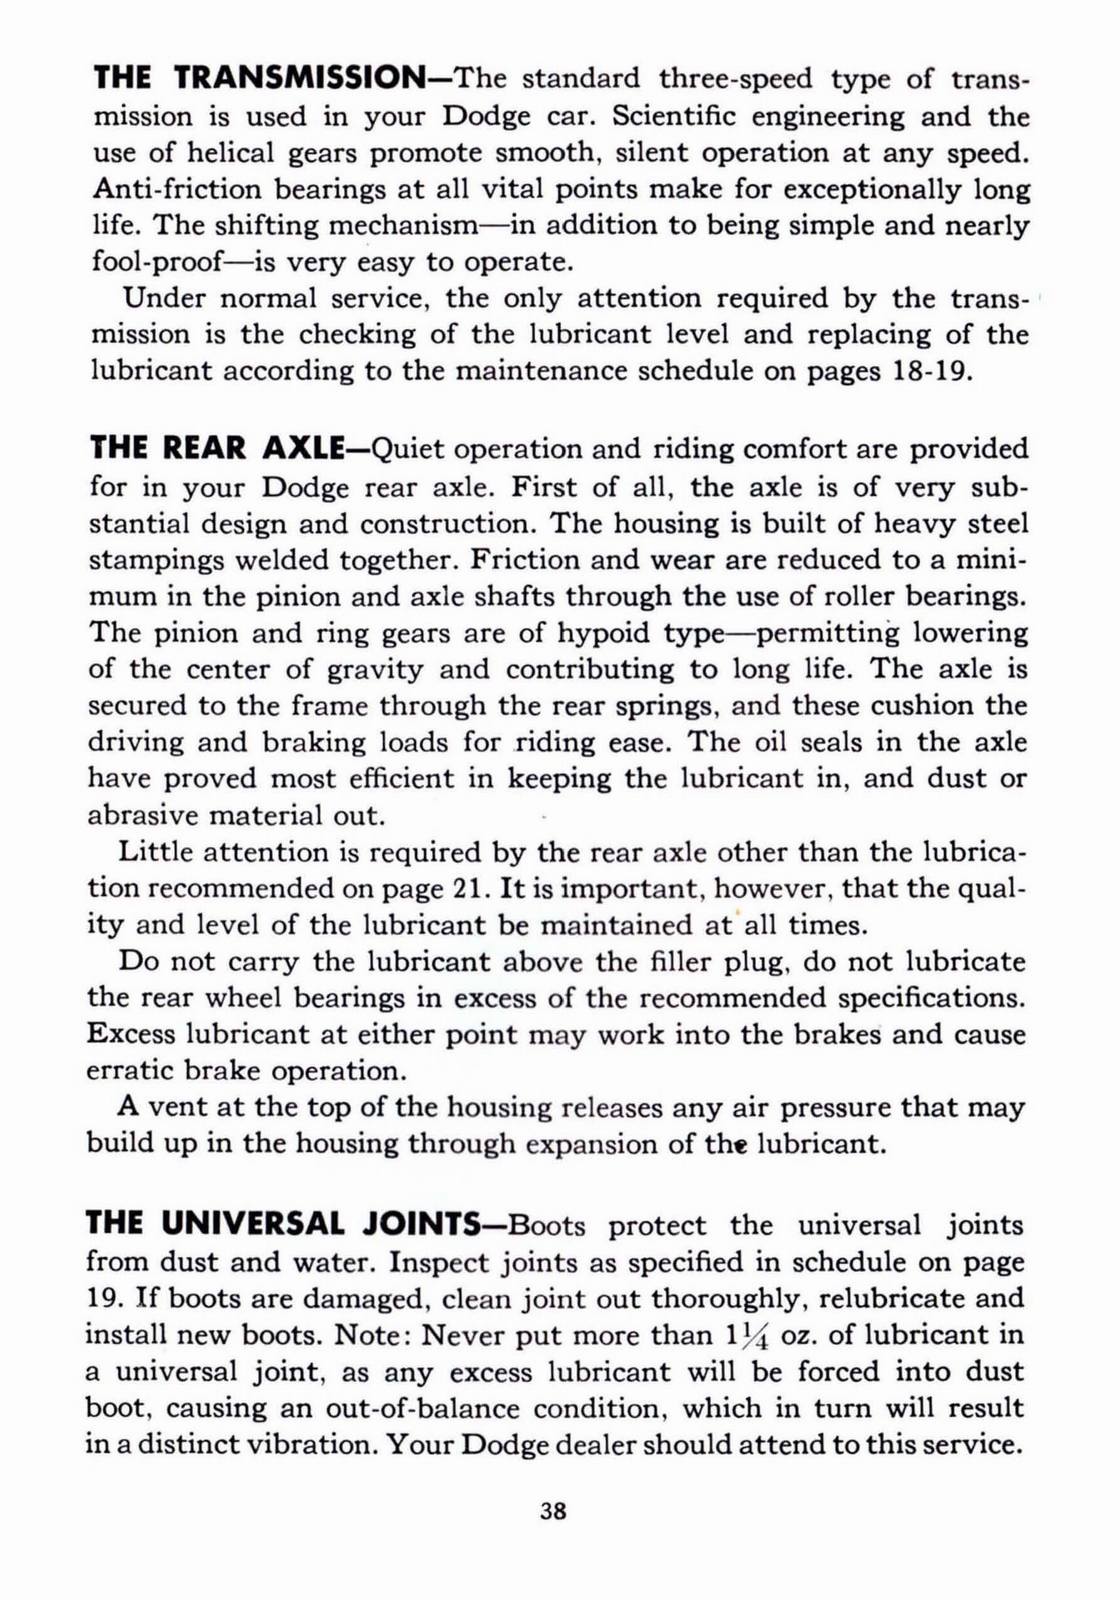 n_1941 Dodge Owners Manual-38.jpg